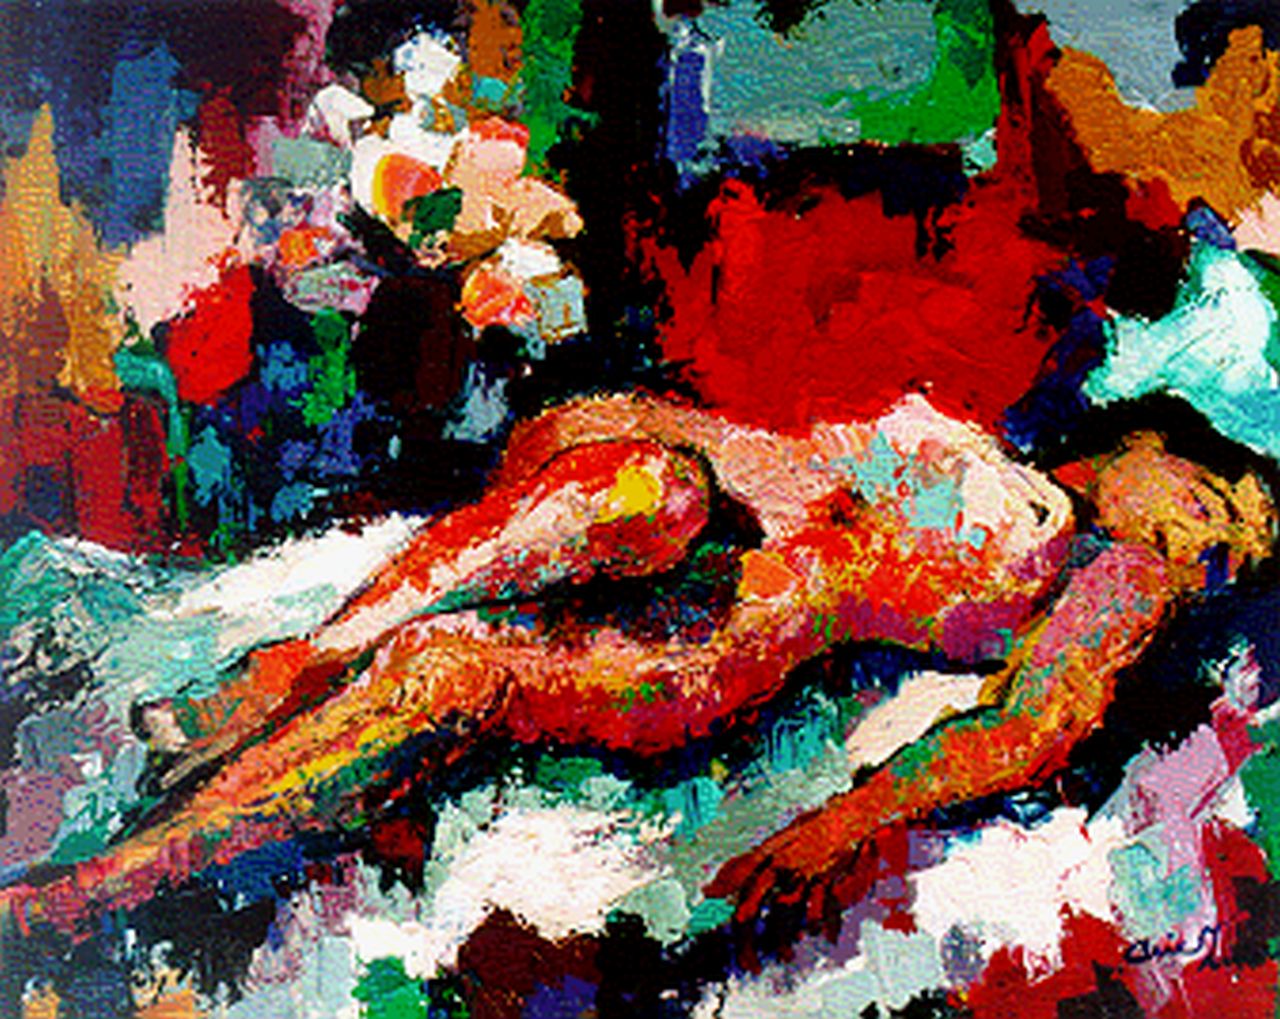 Zuidersma A.  | Arend 'Arie' Zuidersma, Liggend naakt, olieverf op doek 80,2 x 100,0 cm, gesigneerd rechtsonder en gedateerd '70